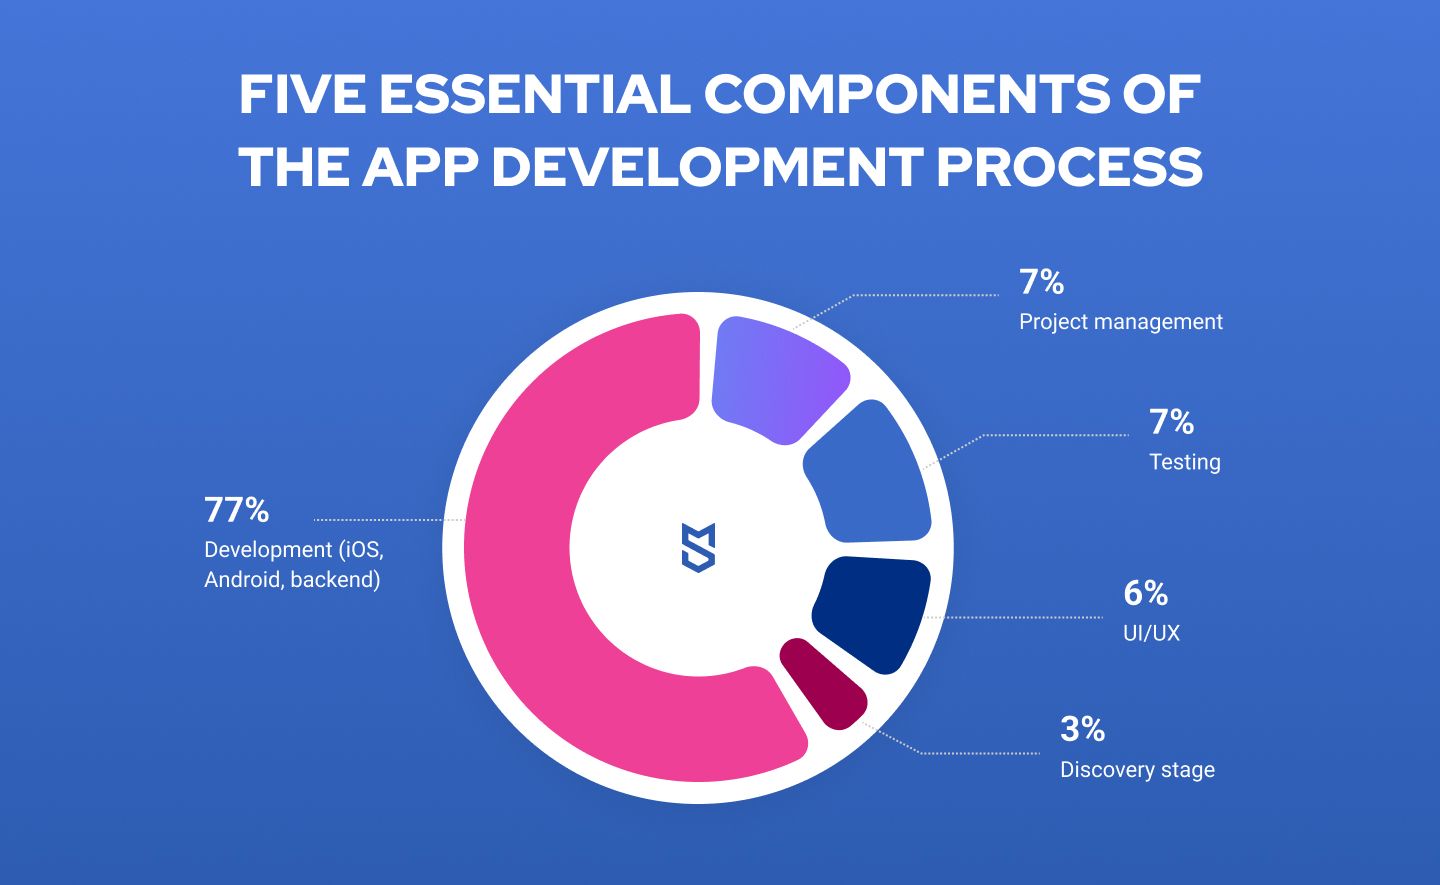 The breakdown of app development cost